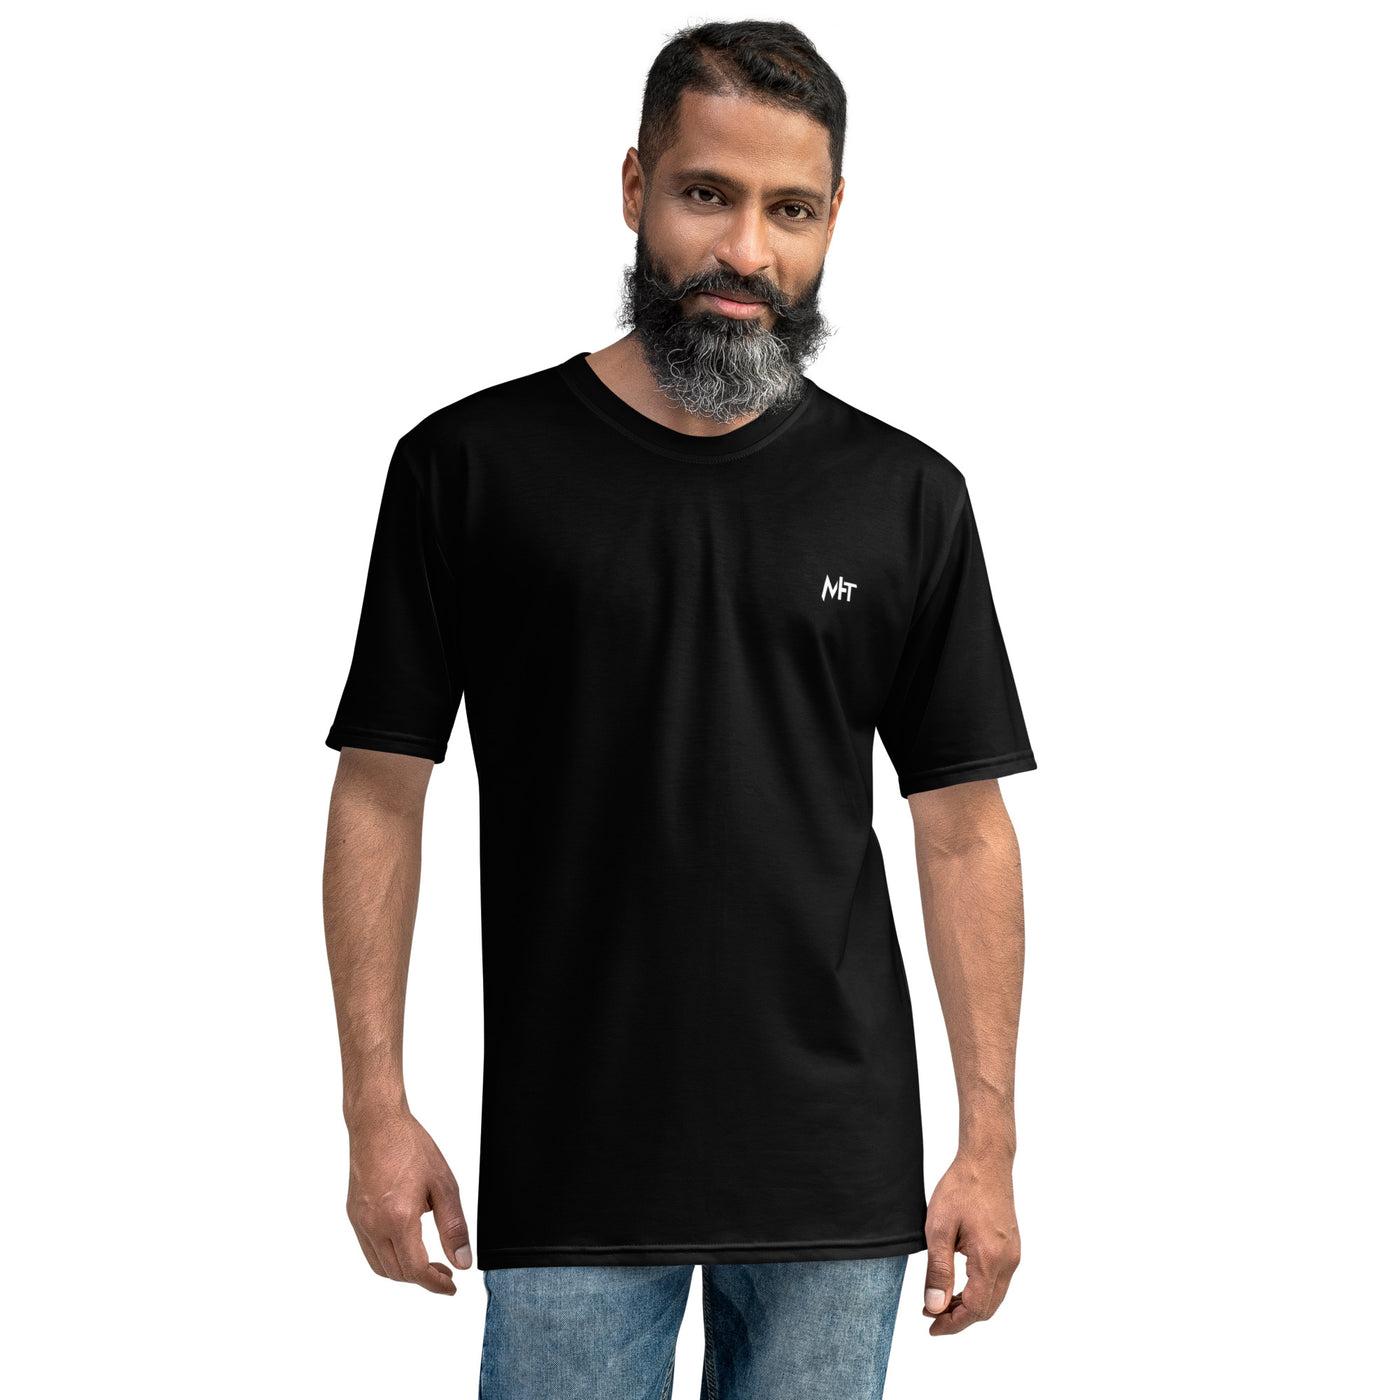 Cyberware assassin v38 - Men's t-shirt